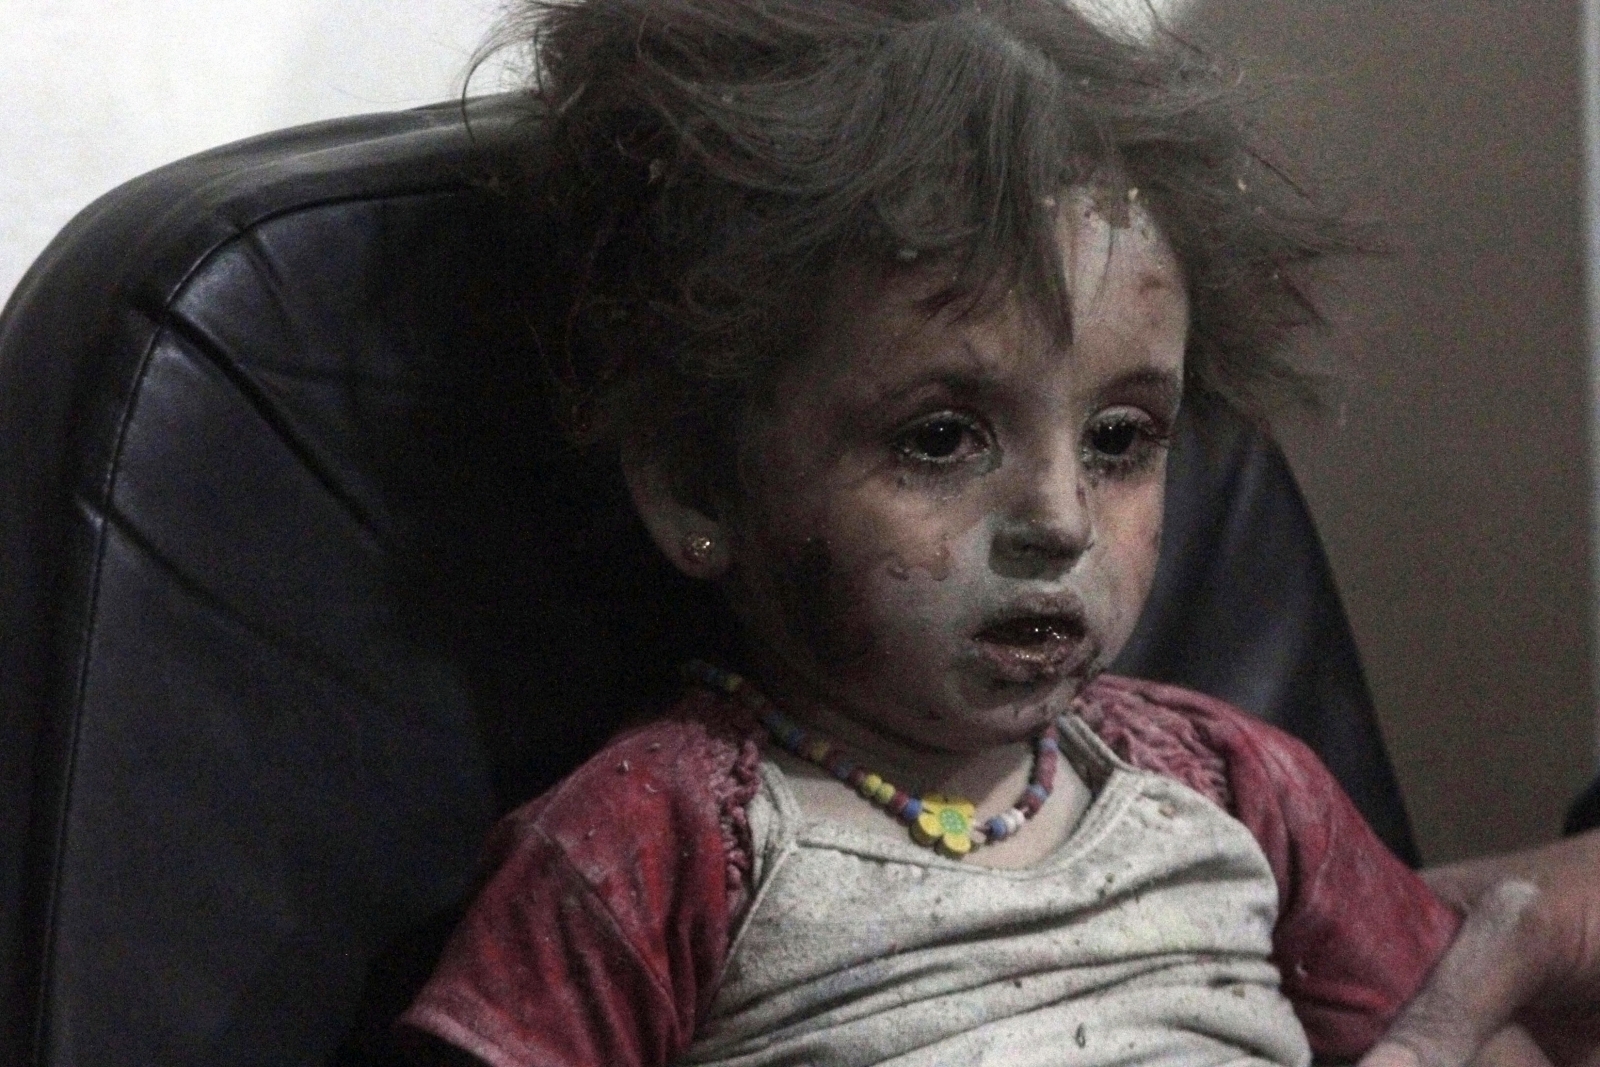 Injured Girl Child Syria Airstrike